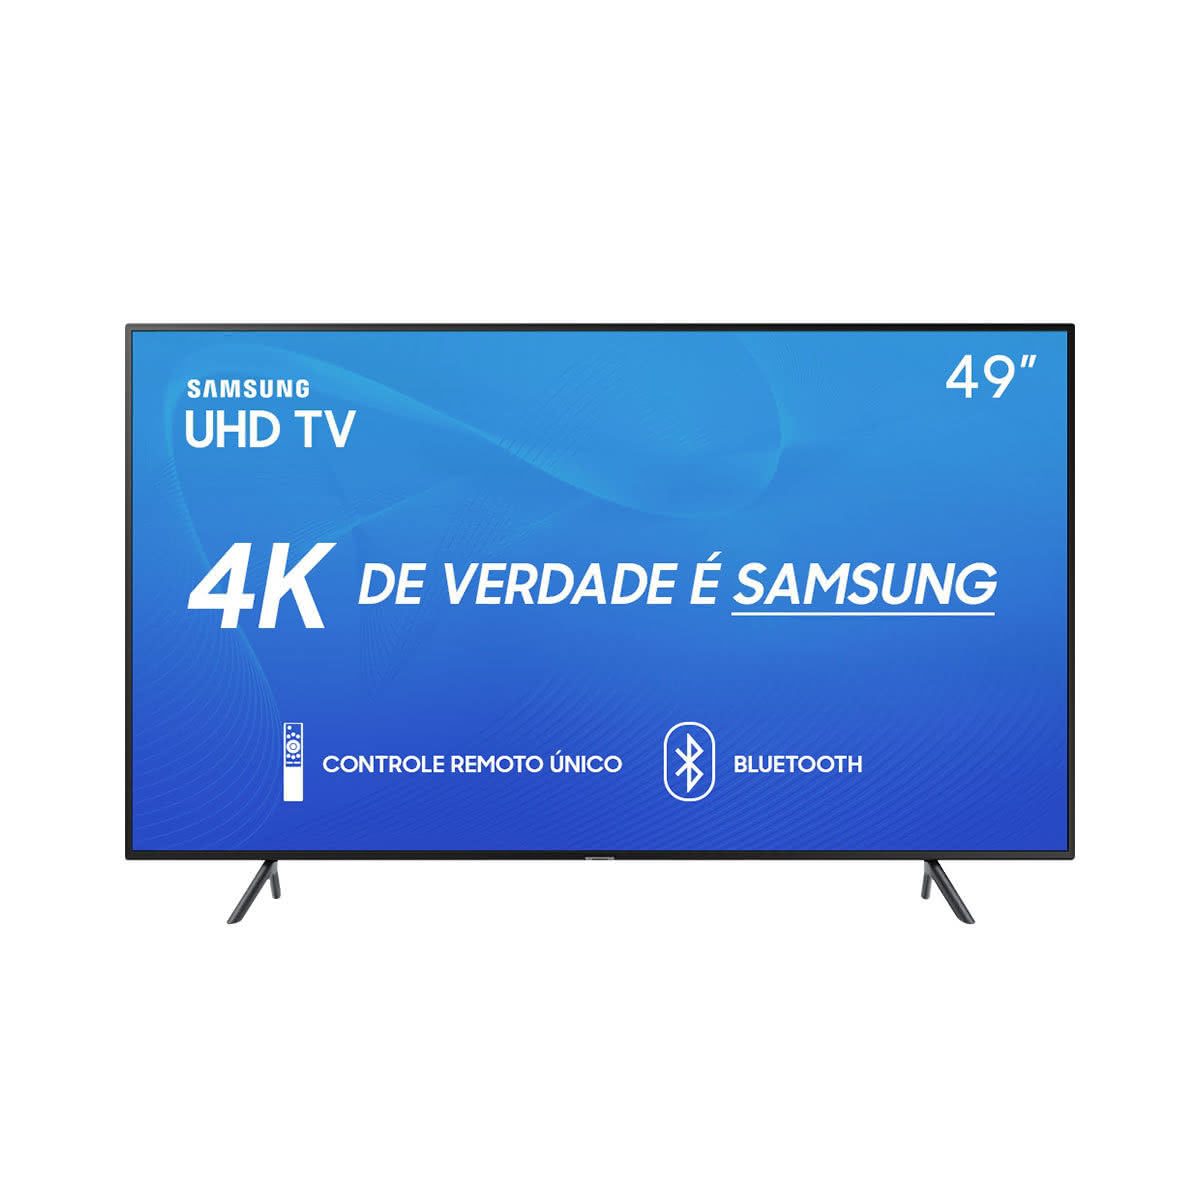 Review da linha RU7100 Samsung de Smart TV 4K UHD 9